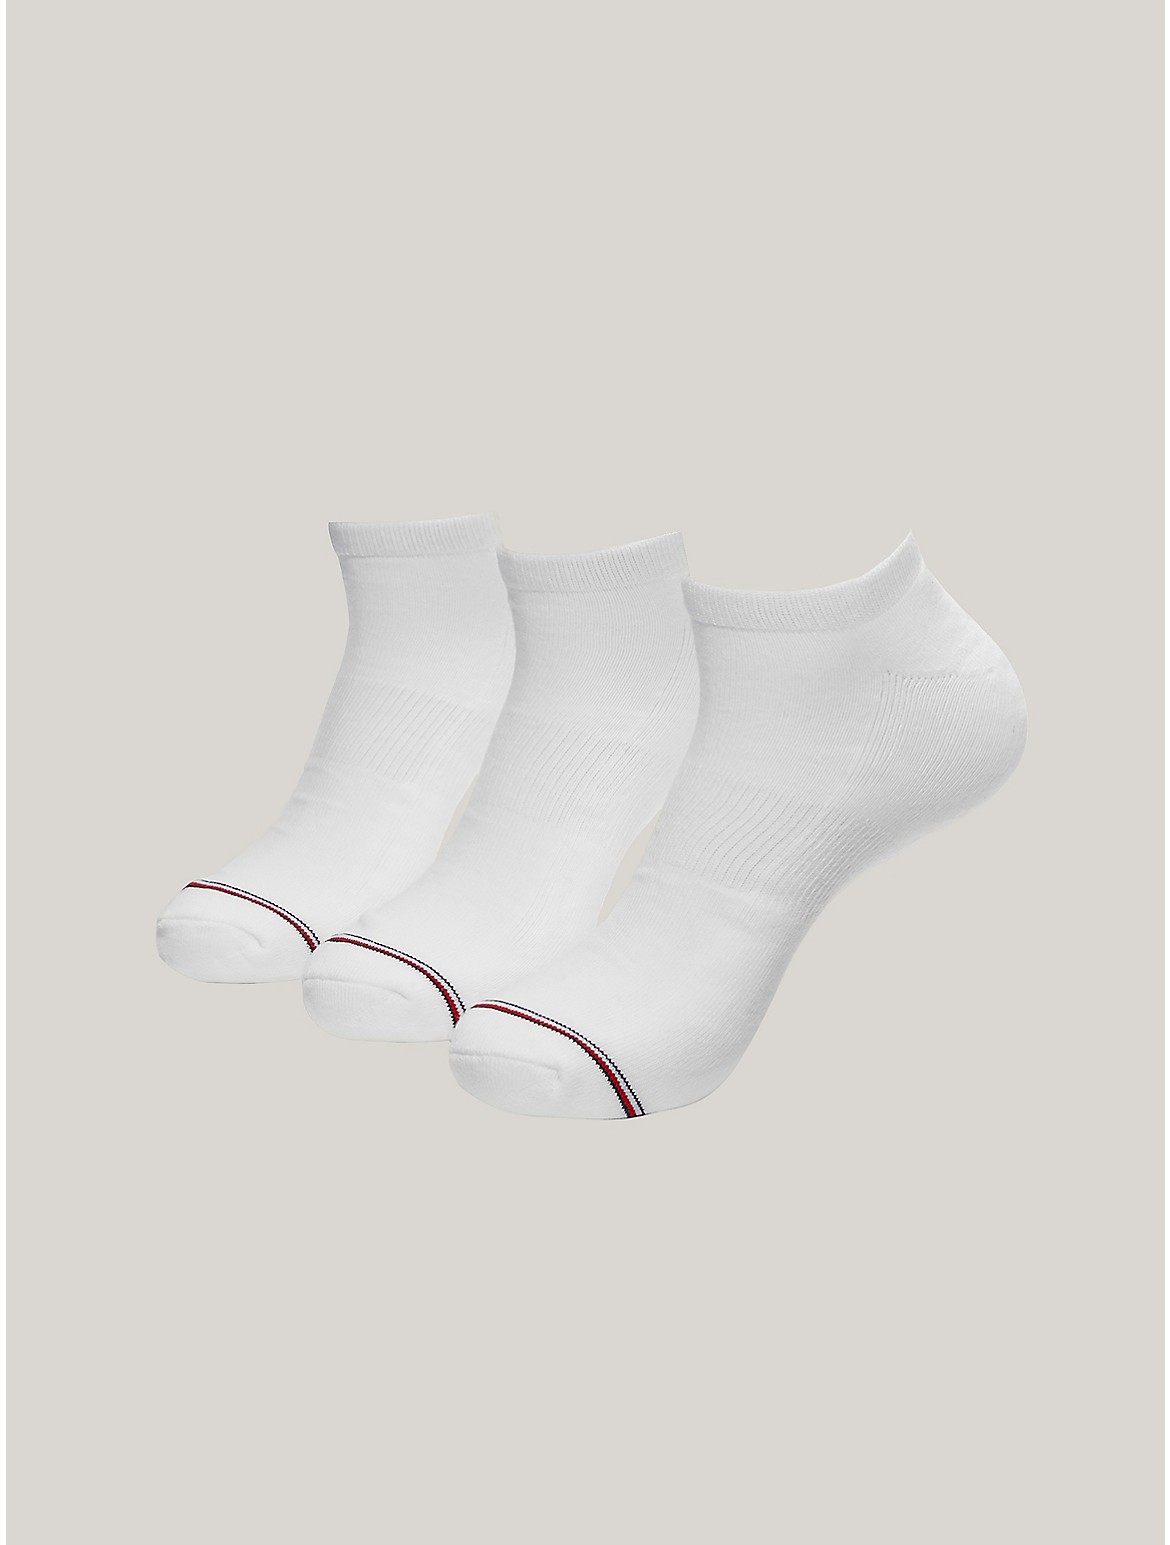 Tommy Hilfiger Men's Ankle Sock 3-Pack